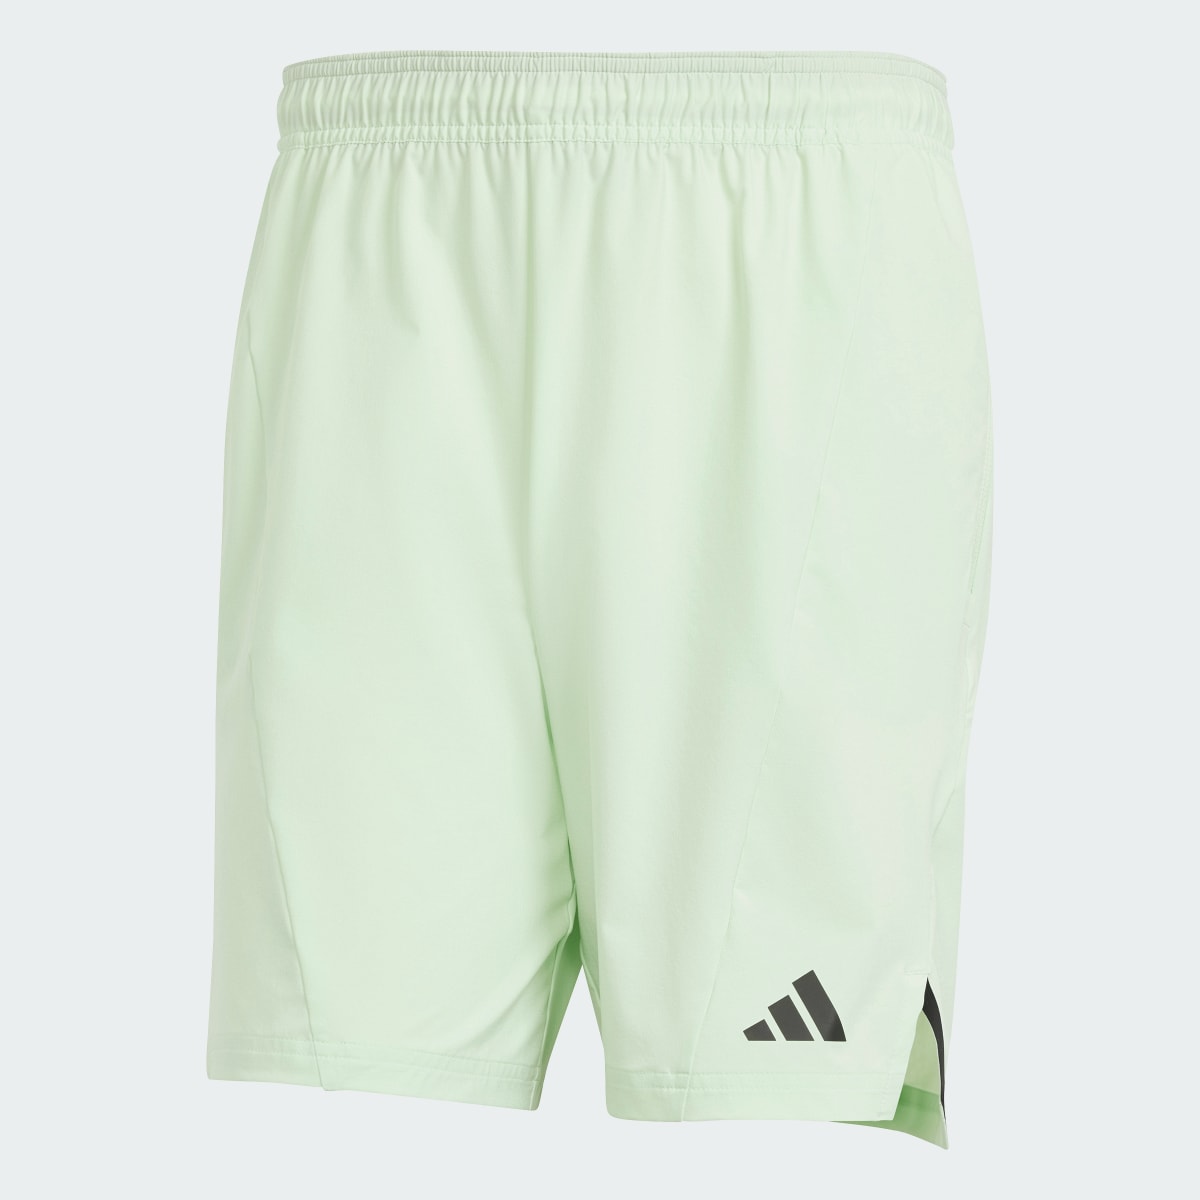 Adidas Designed for Training Workout Shorts. 4